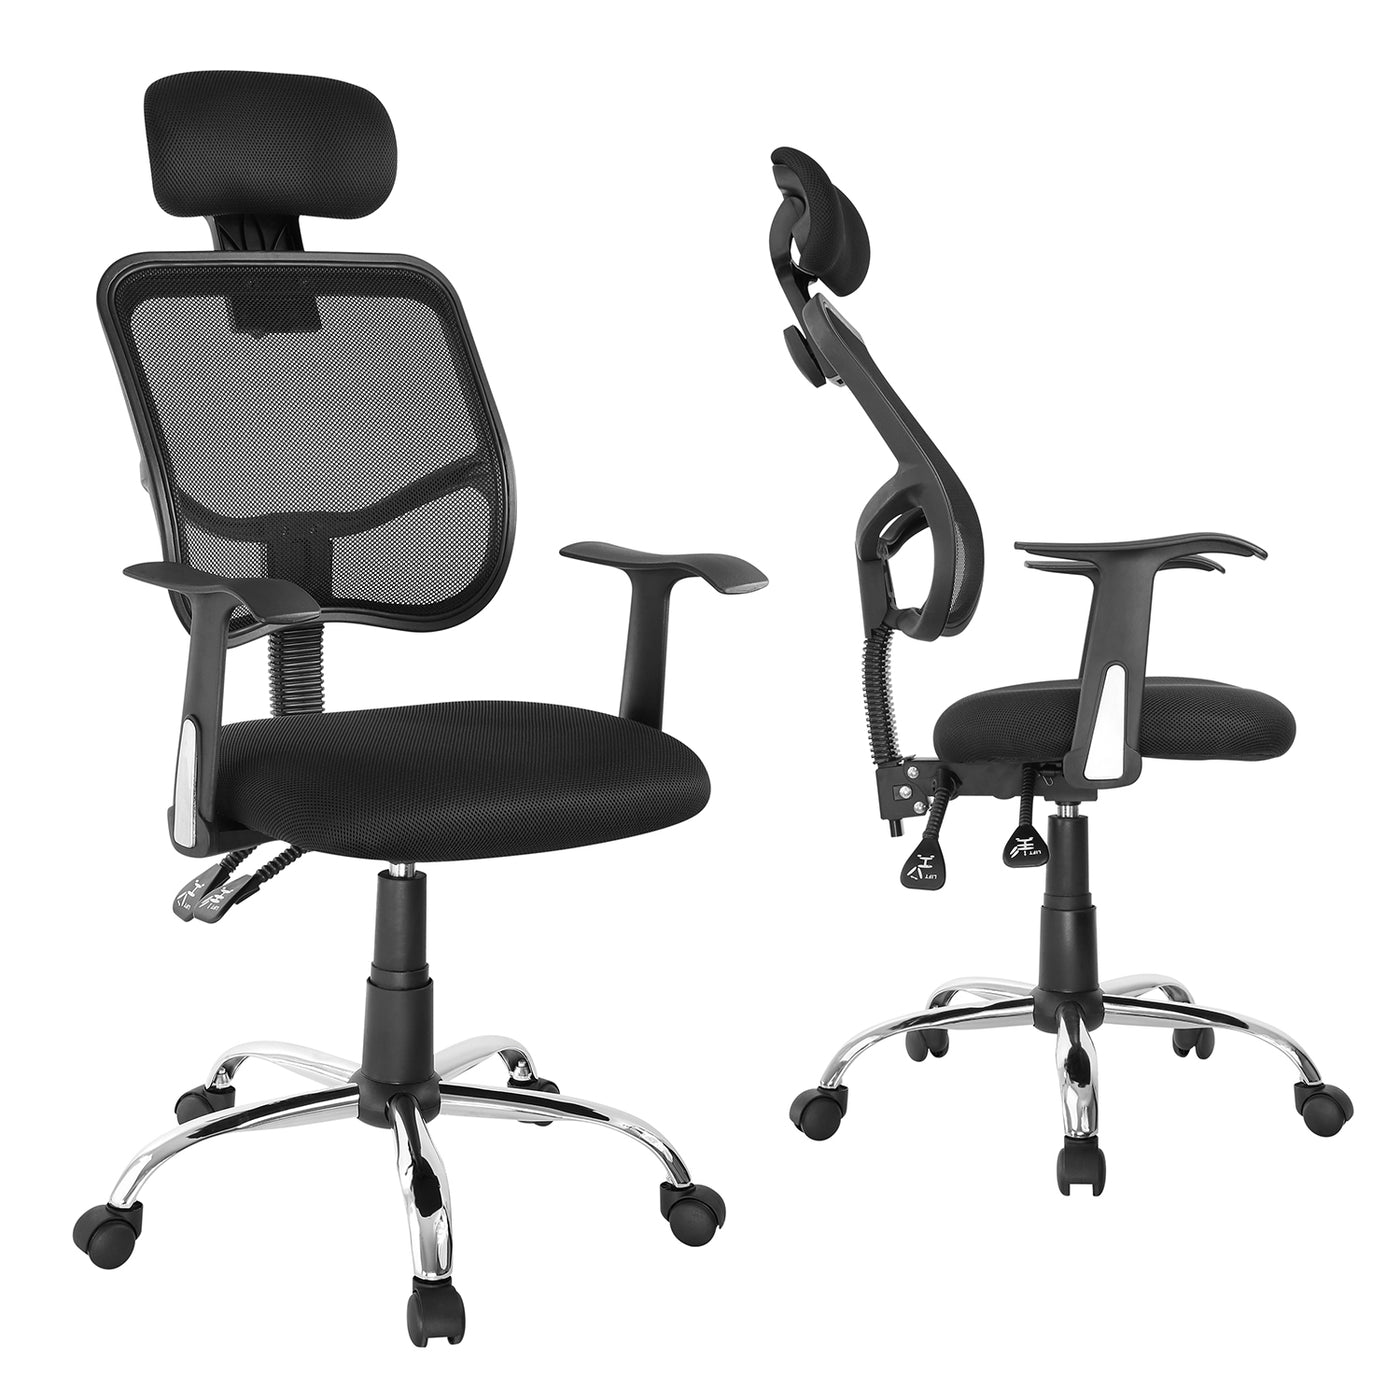 Siatkowe ergonomiczne krzesło biurowe z wysokim oparciem, regulowany zagłówek, max 150kg Ergo Office ER-413